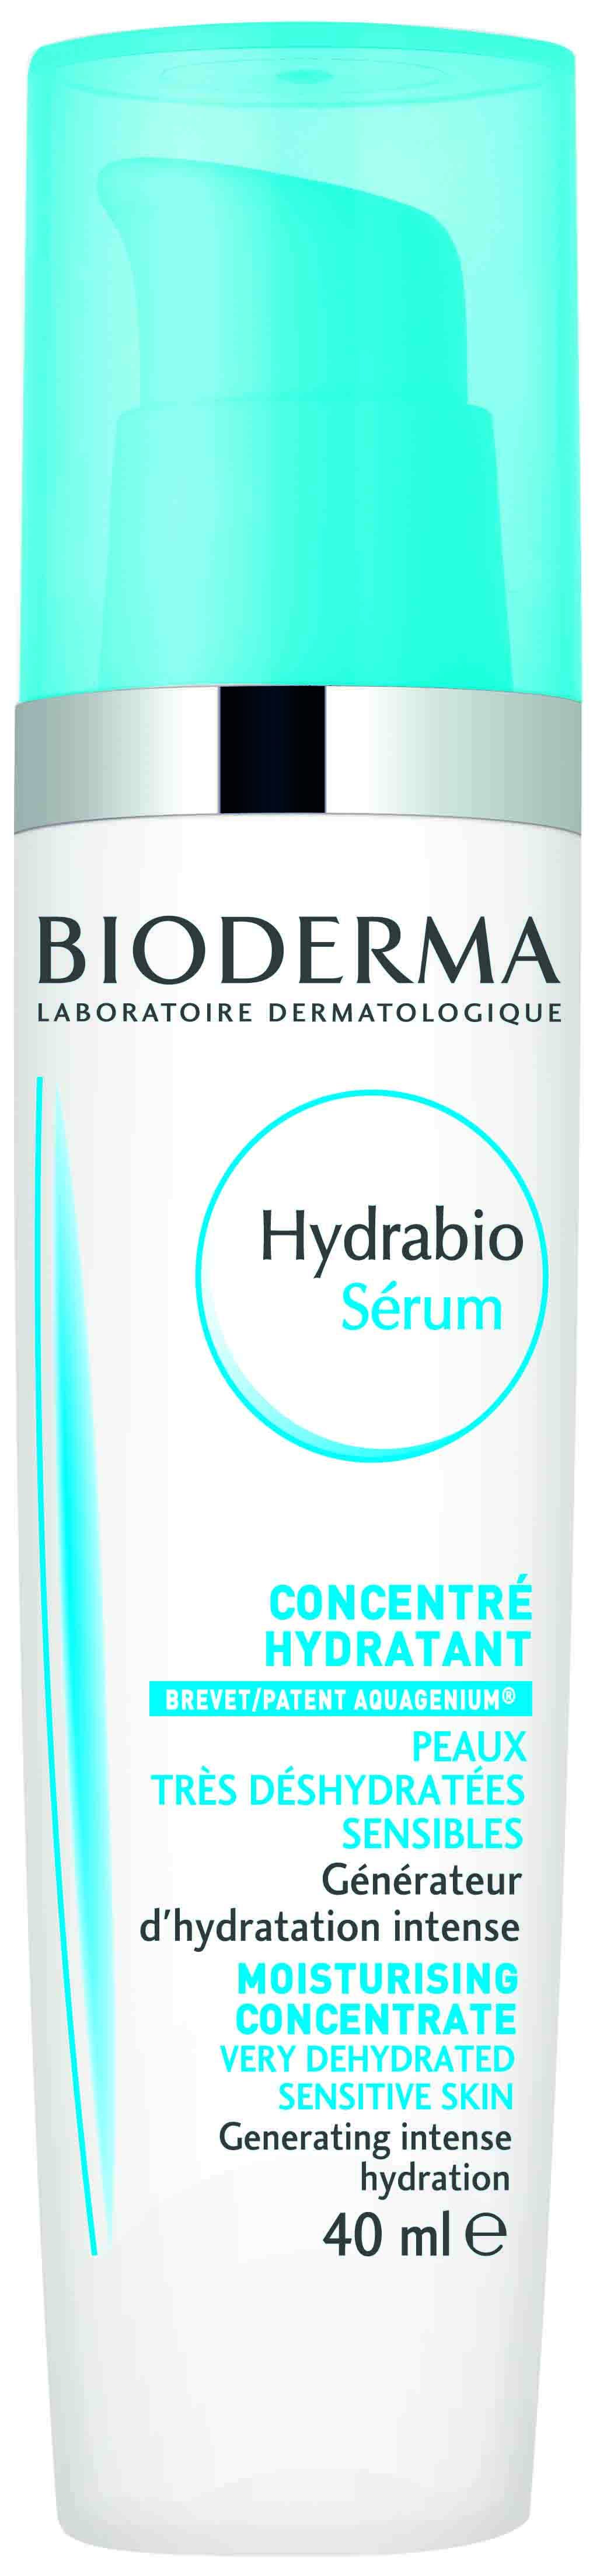 Hydrabio Serum 40ml